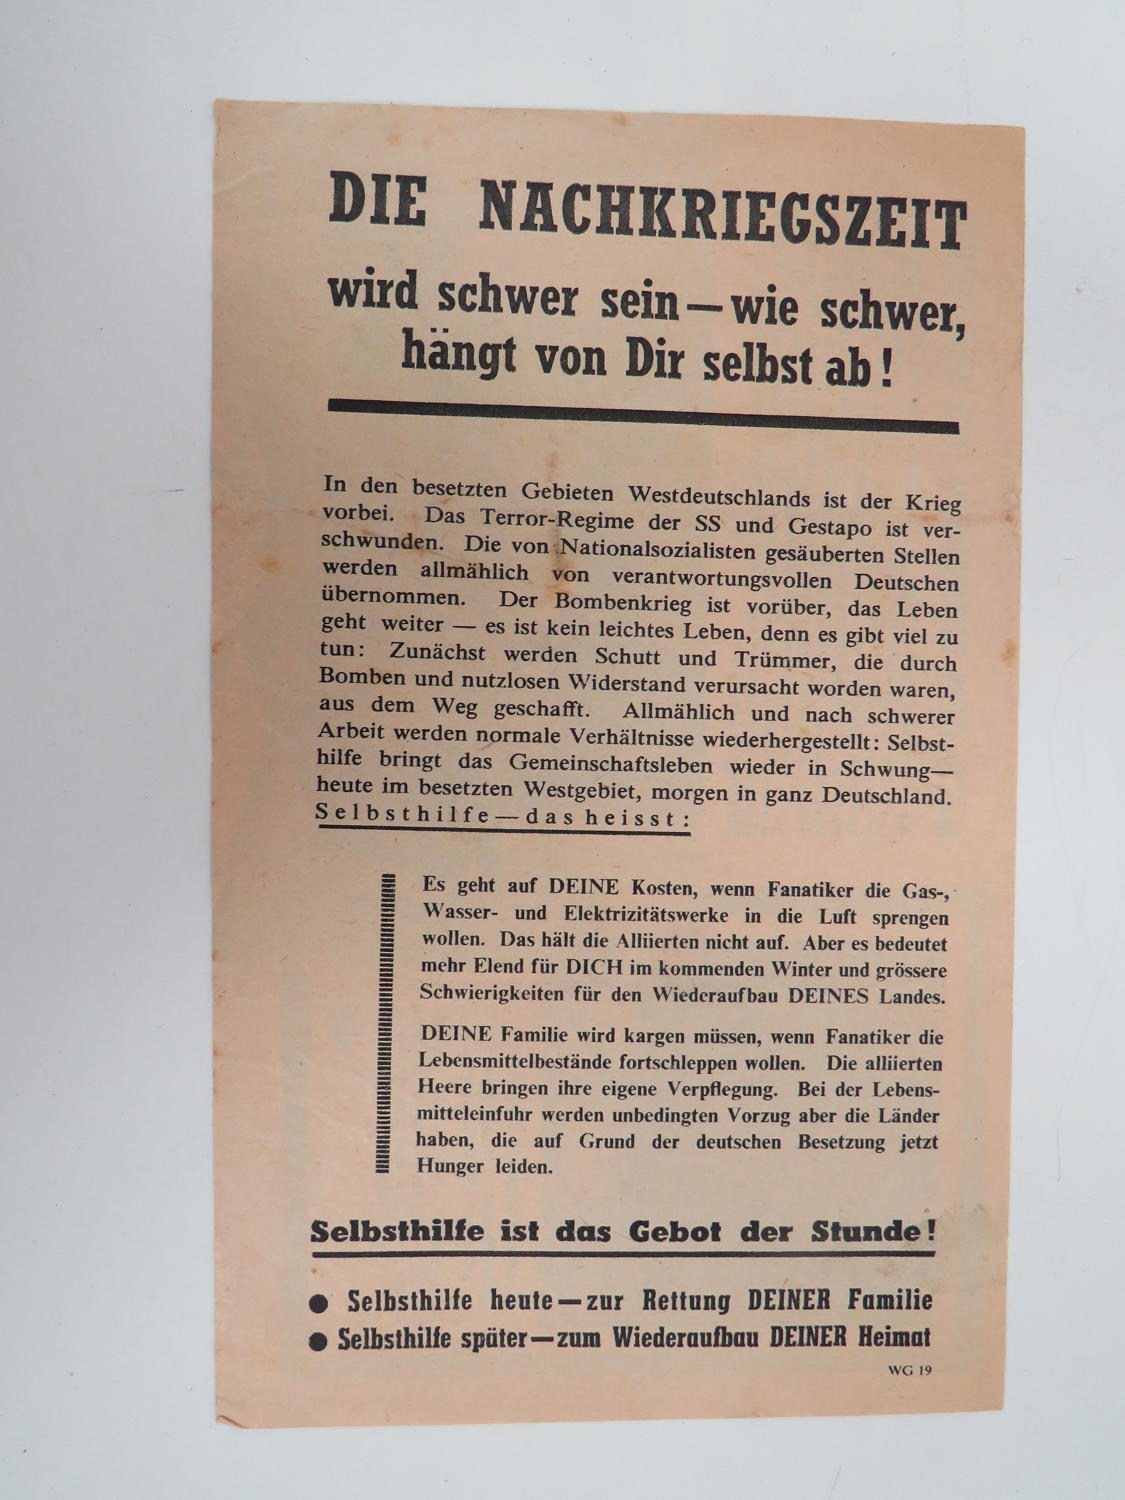 WW 2 German Propaganda Leaflet WG 19